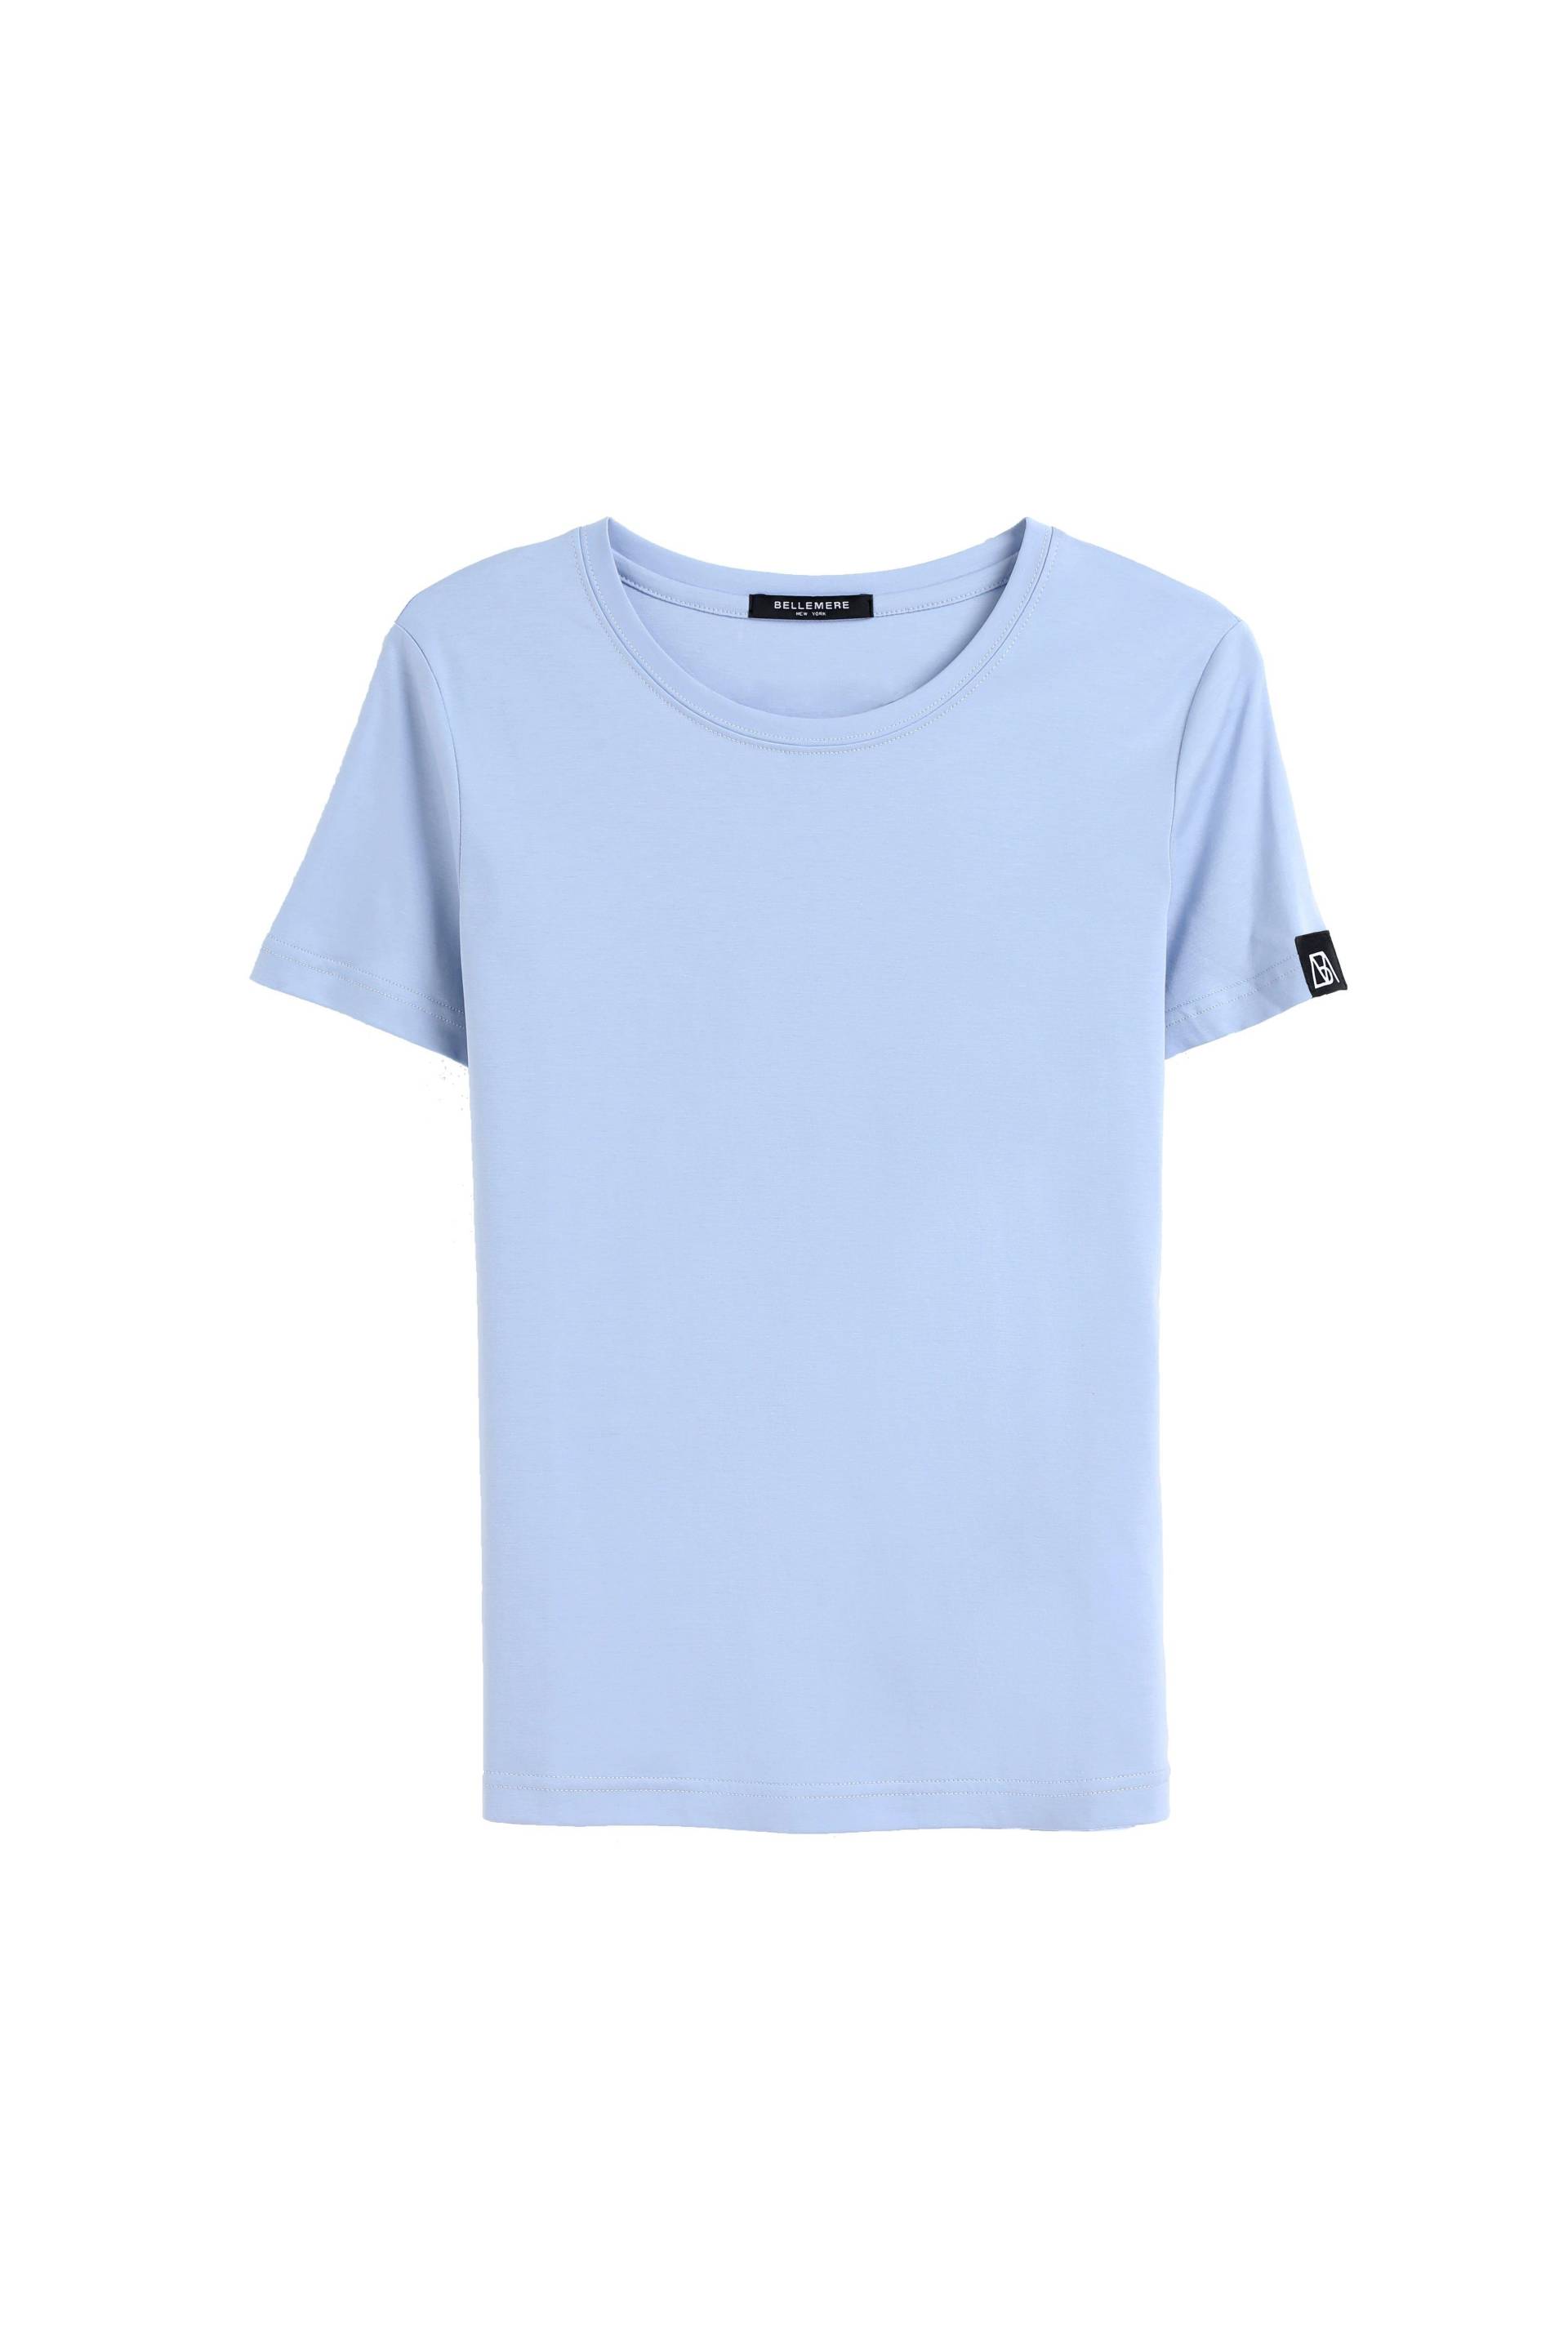 Grand T-shirt Aus Baumwolle Mit Rundhalsausschnitt, 160 G Damen Hellblau M von Bellemere New York